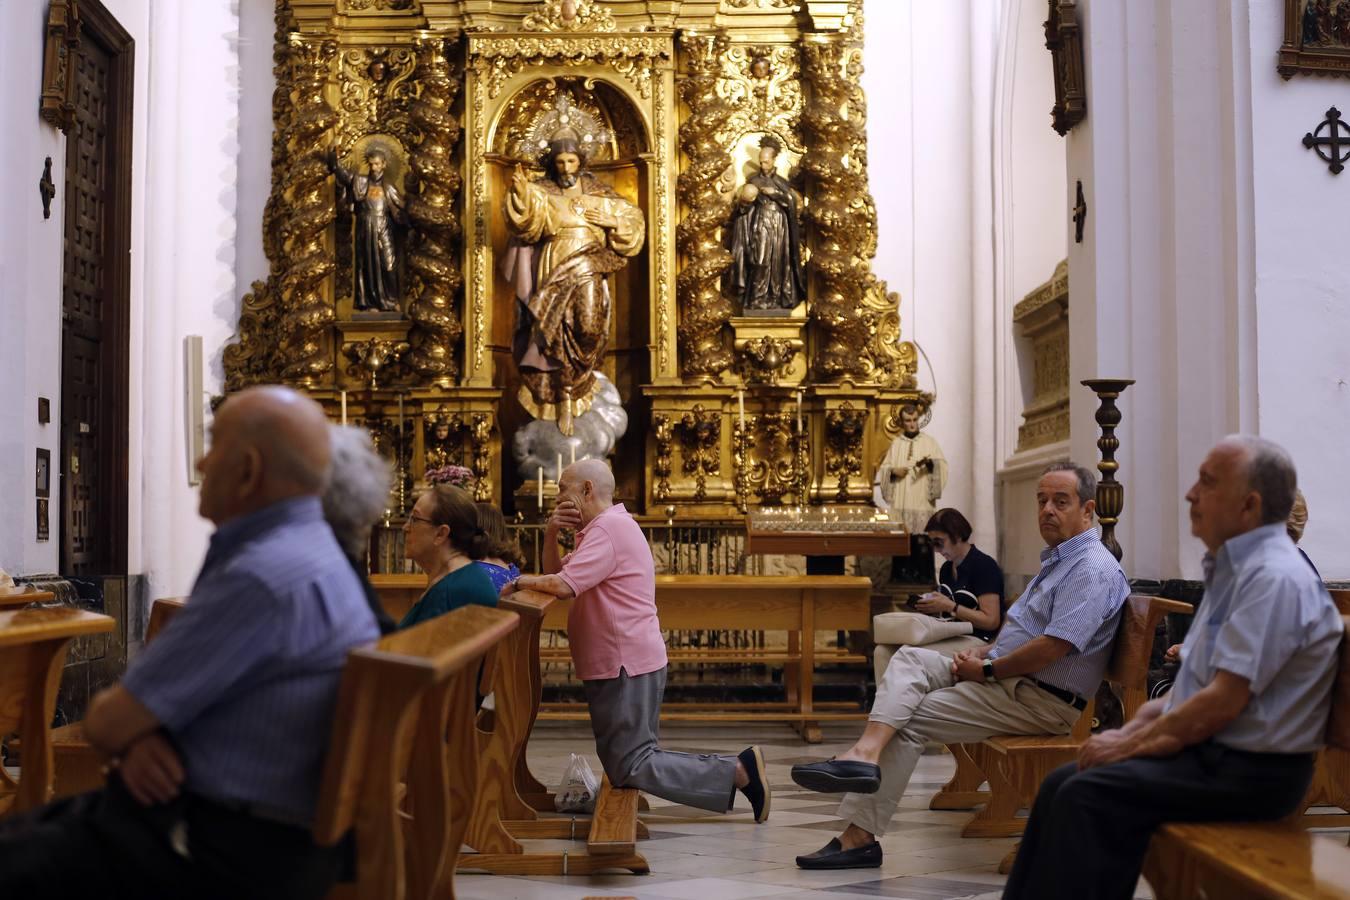 Las mejores imágenes de la iglesia de San Hipólito en Córdoba